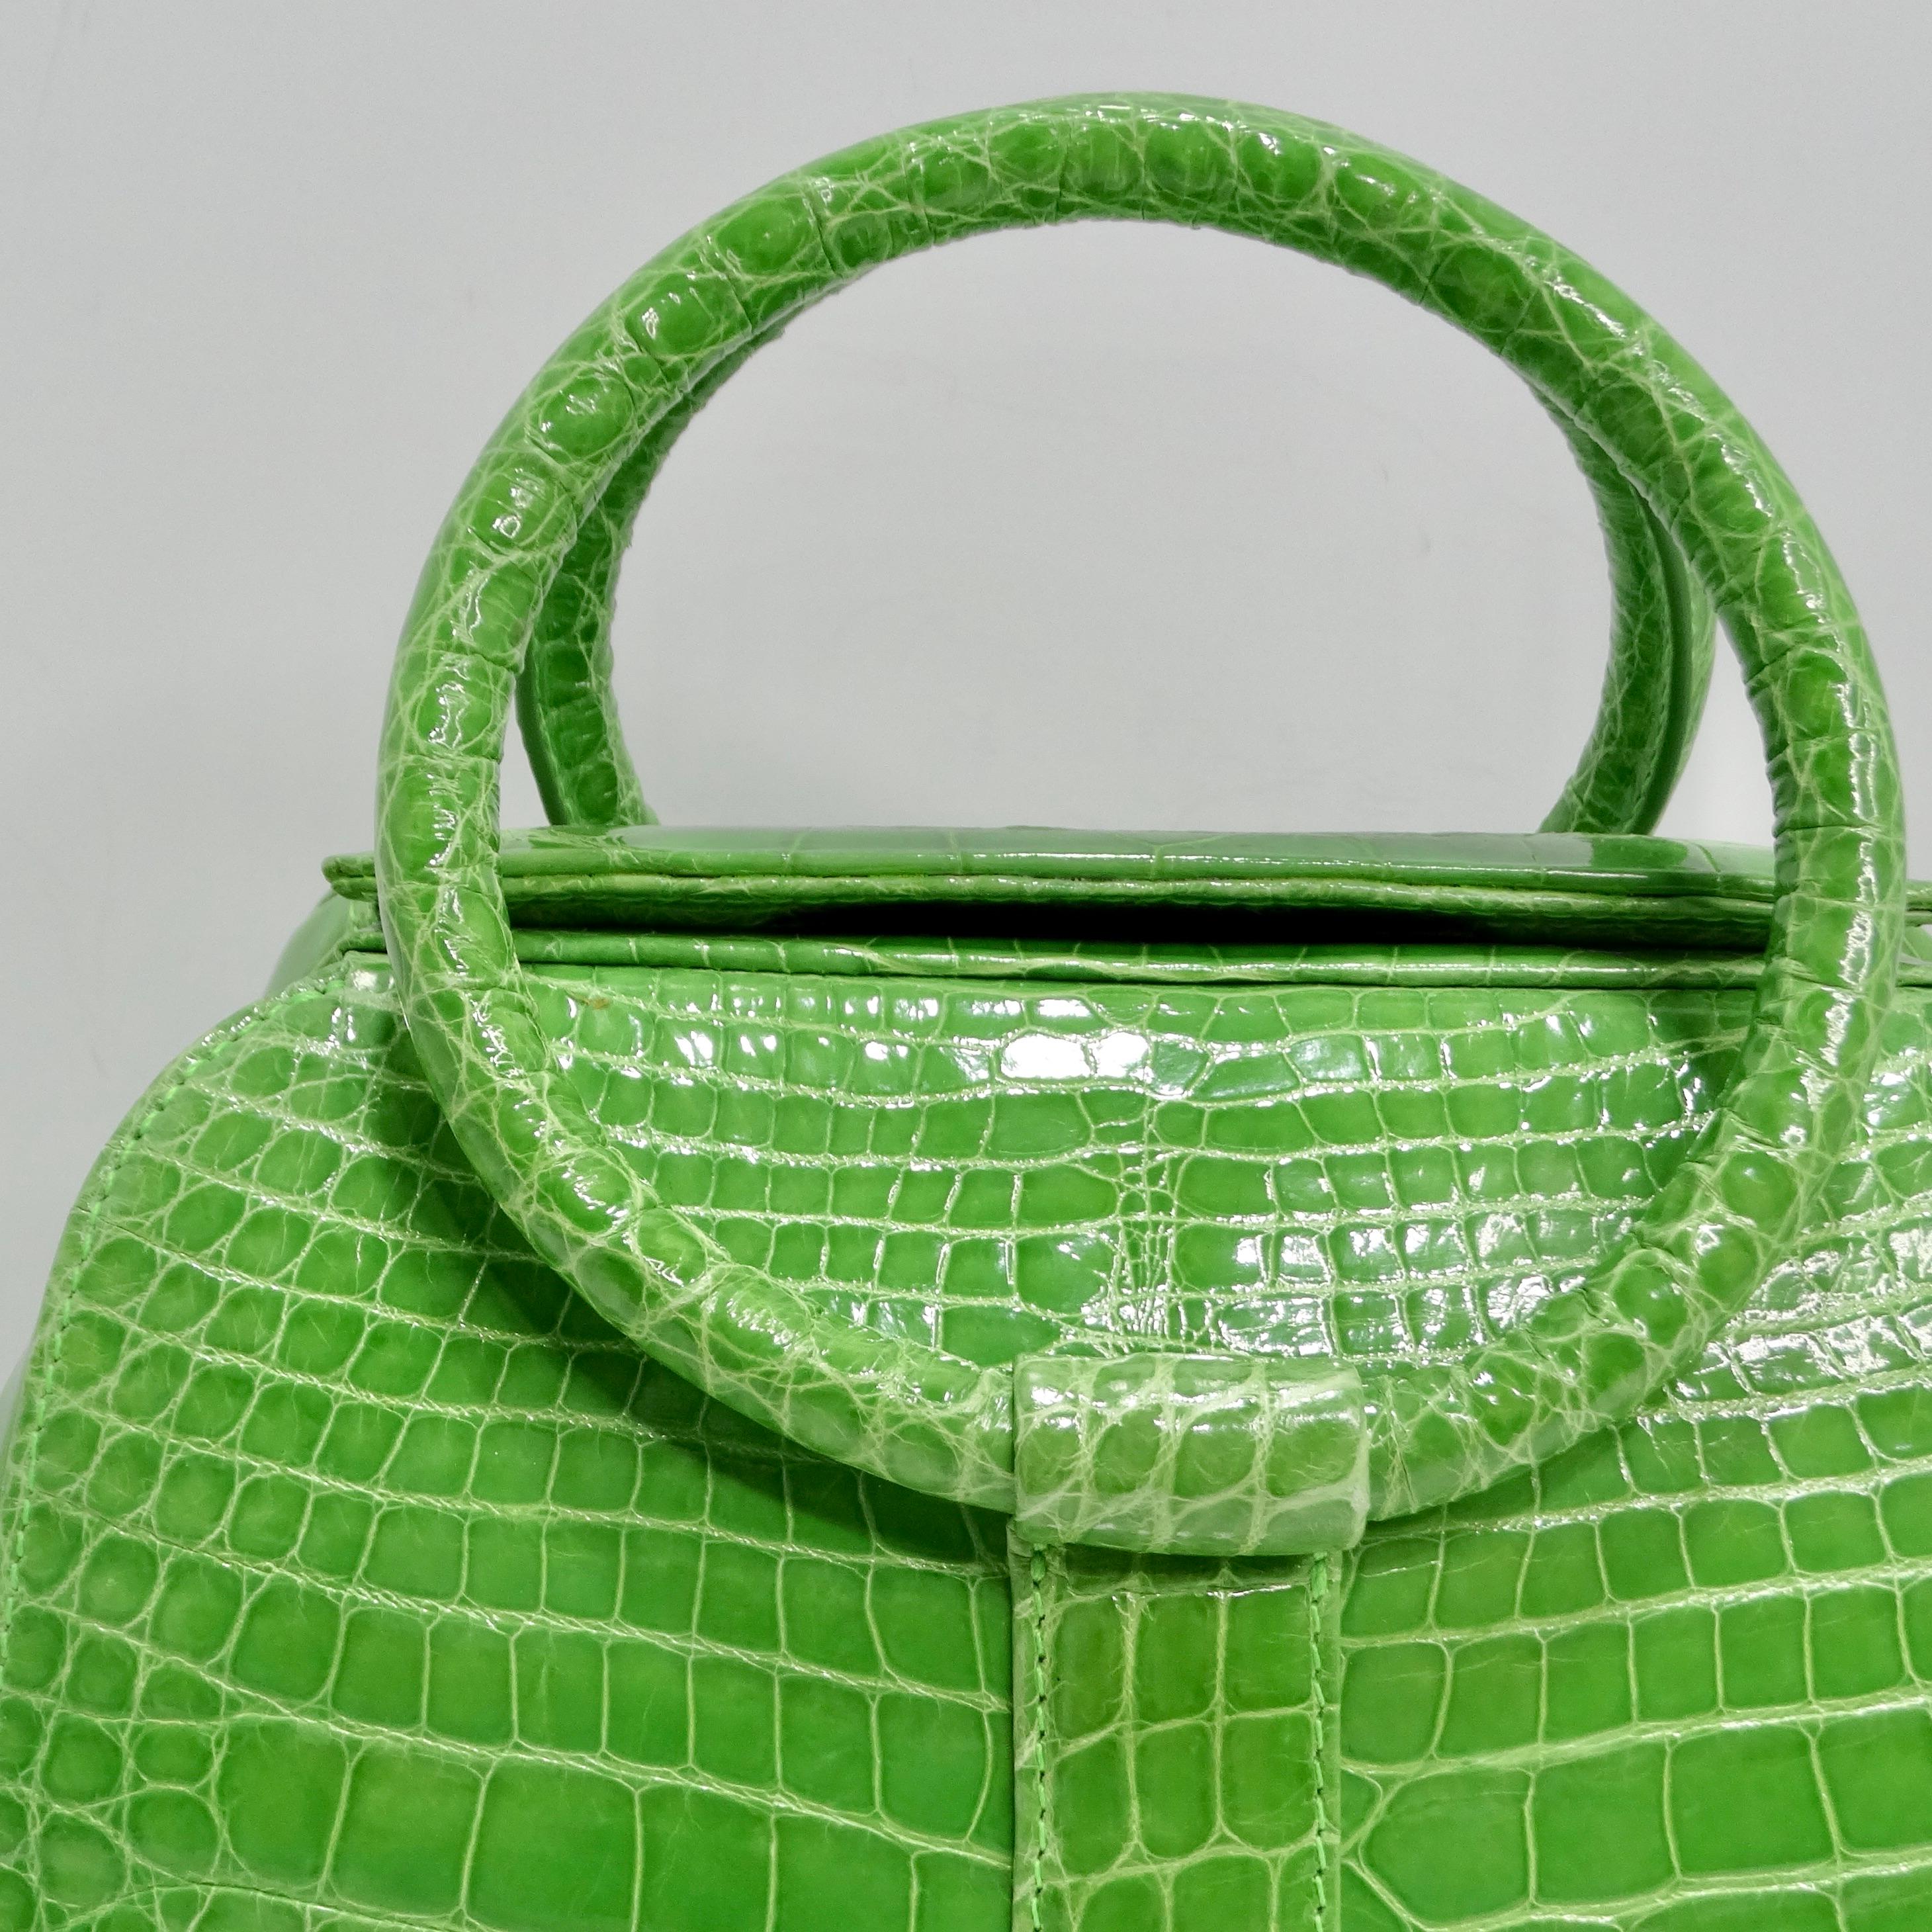 Le sac à main BC Luxury Green Crocodile Leather Top Handle est un accessoire vraiment exquis qui respire le luxe et la sophistication. Confectionné en cuir de crocodile vert lime, ce sac structuré à poignée supérieure fera sensation partout où vous